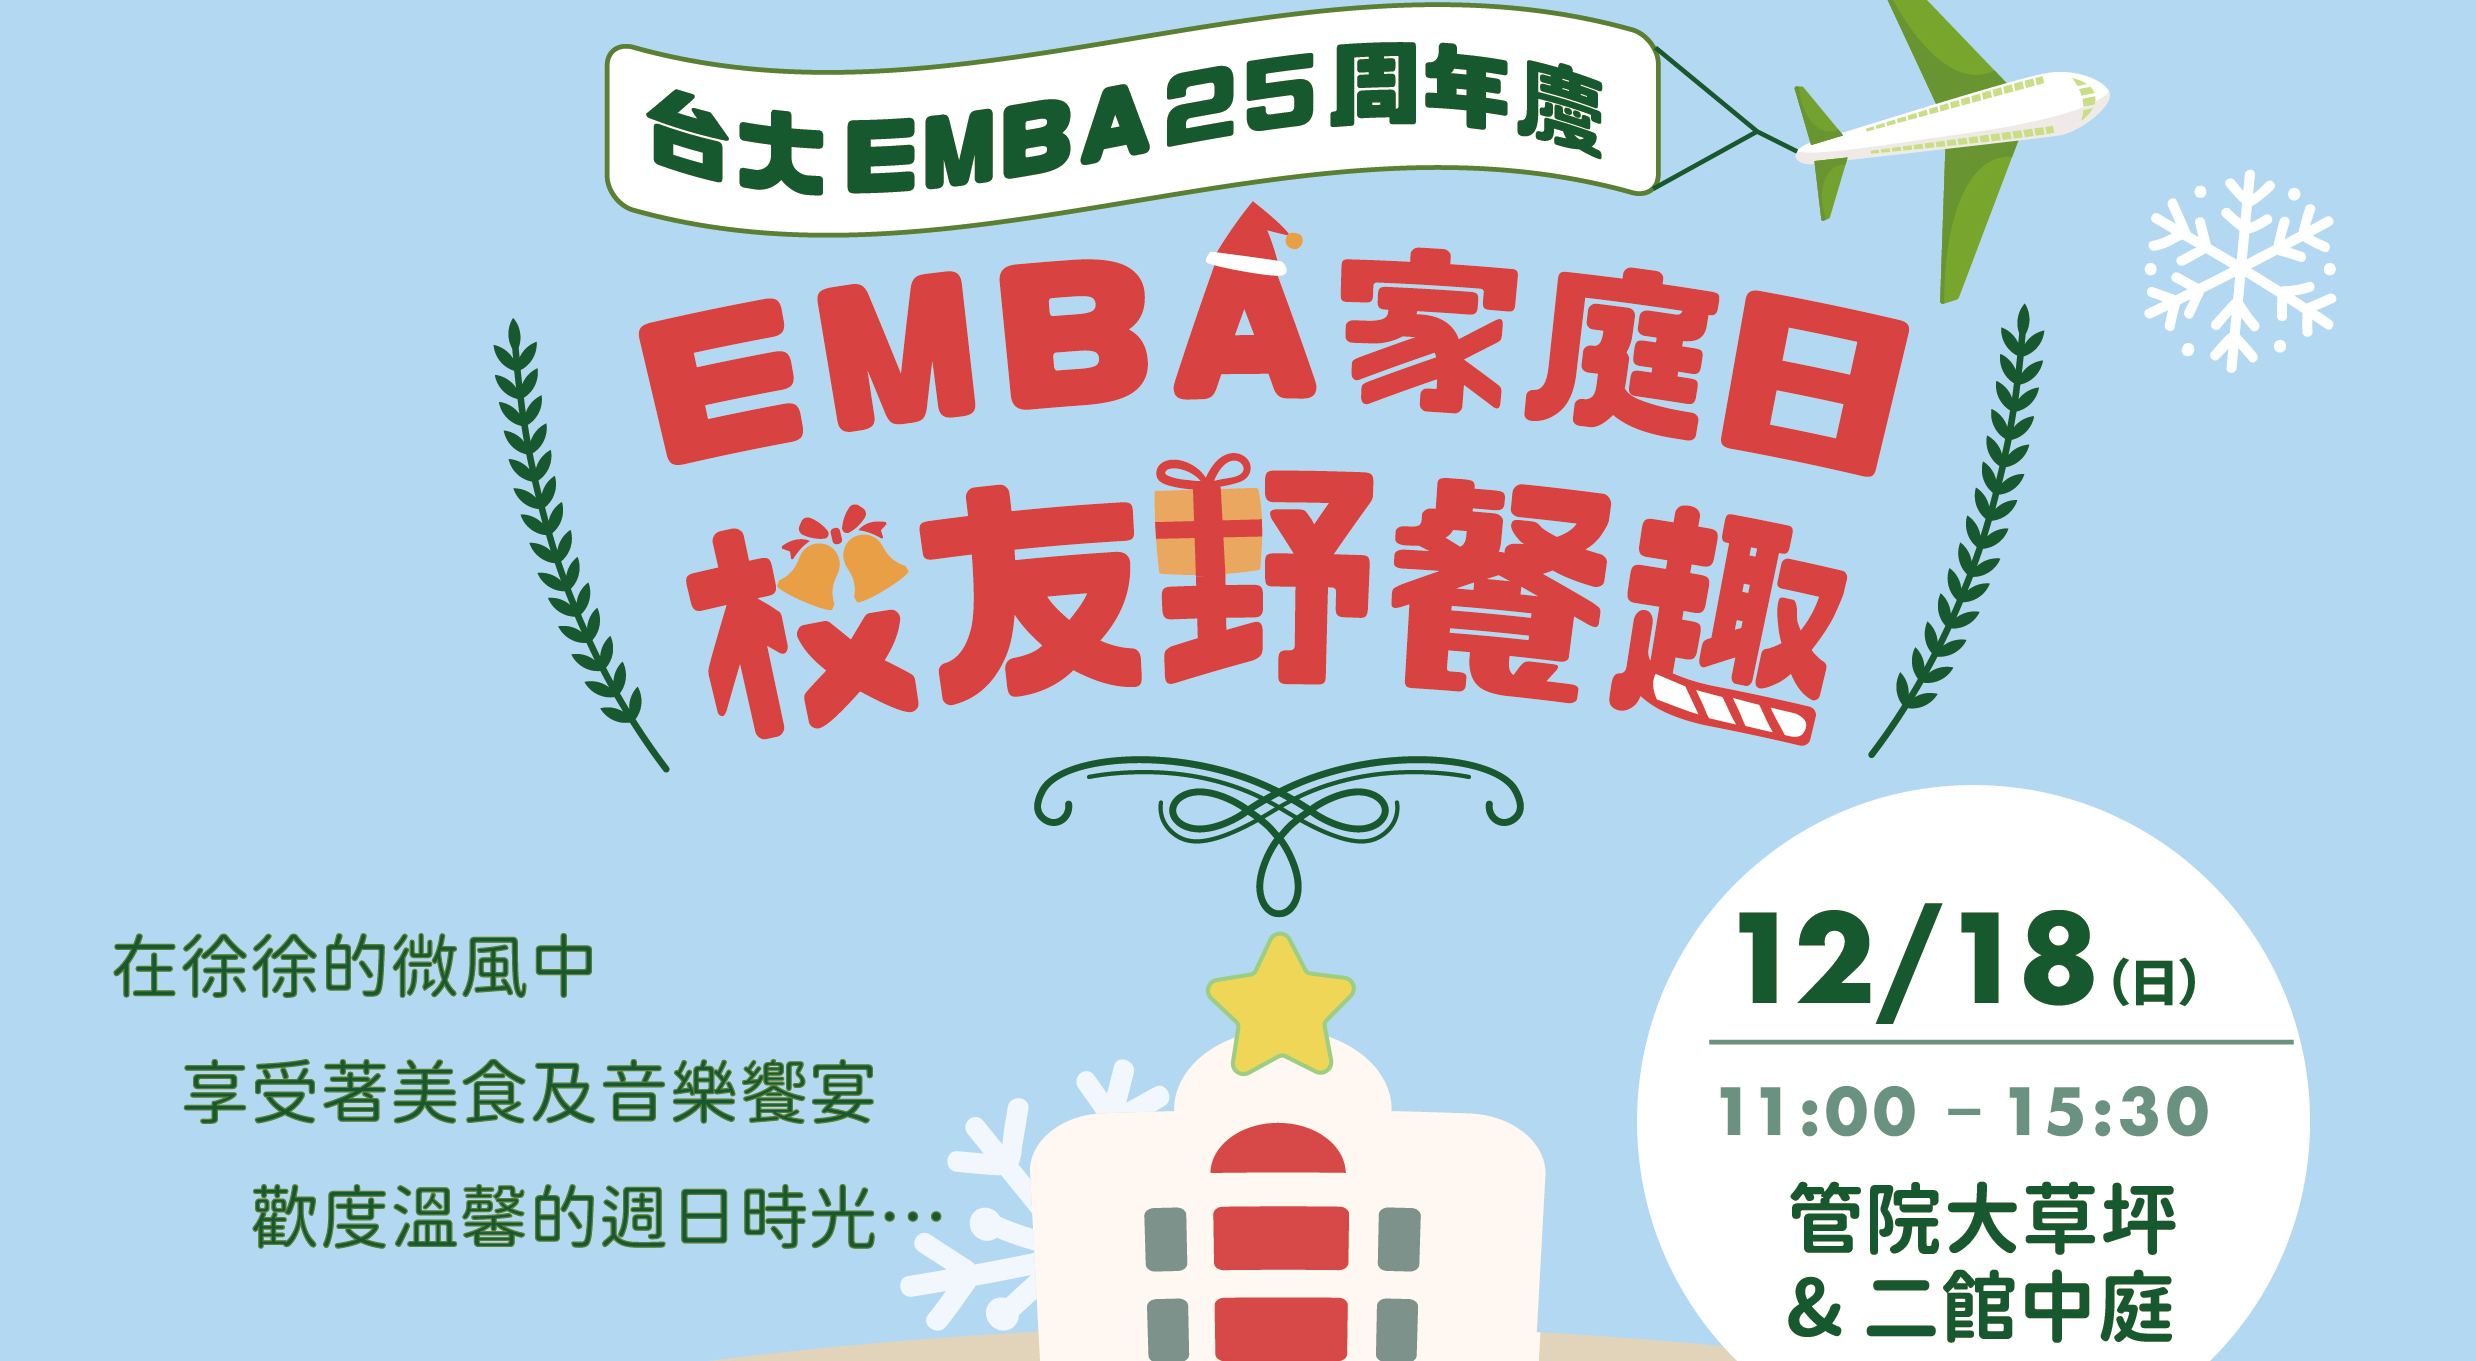 台大EMBA 25周年慶 EMBA家庭日校友野餐趣